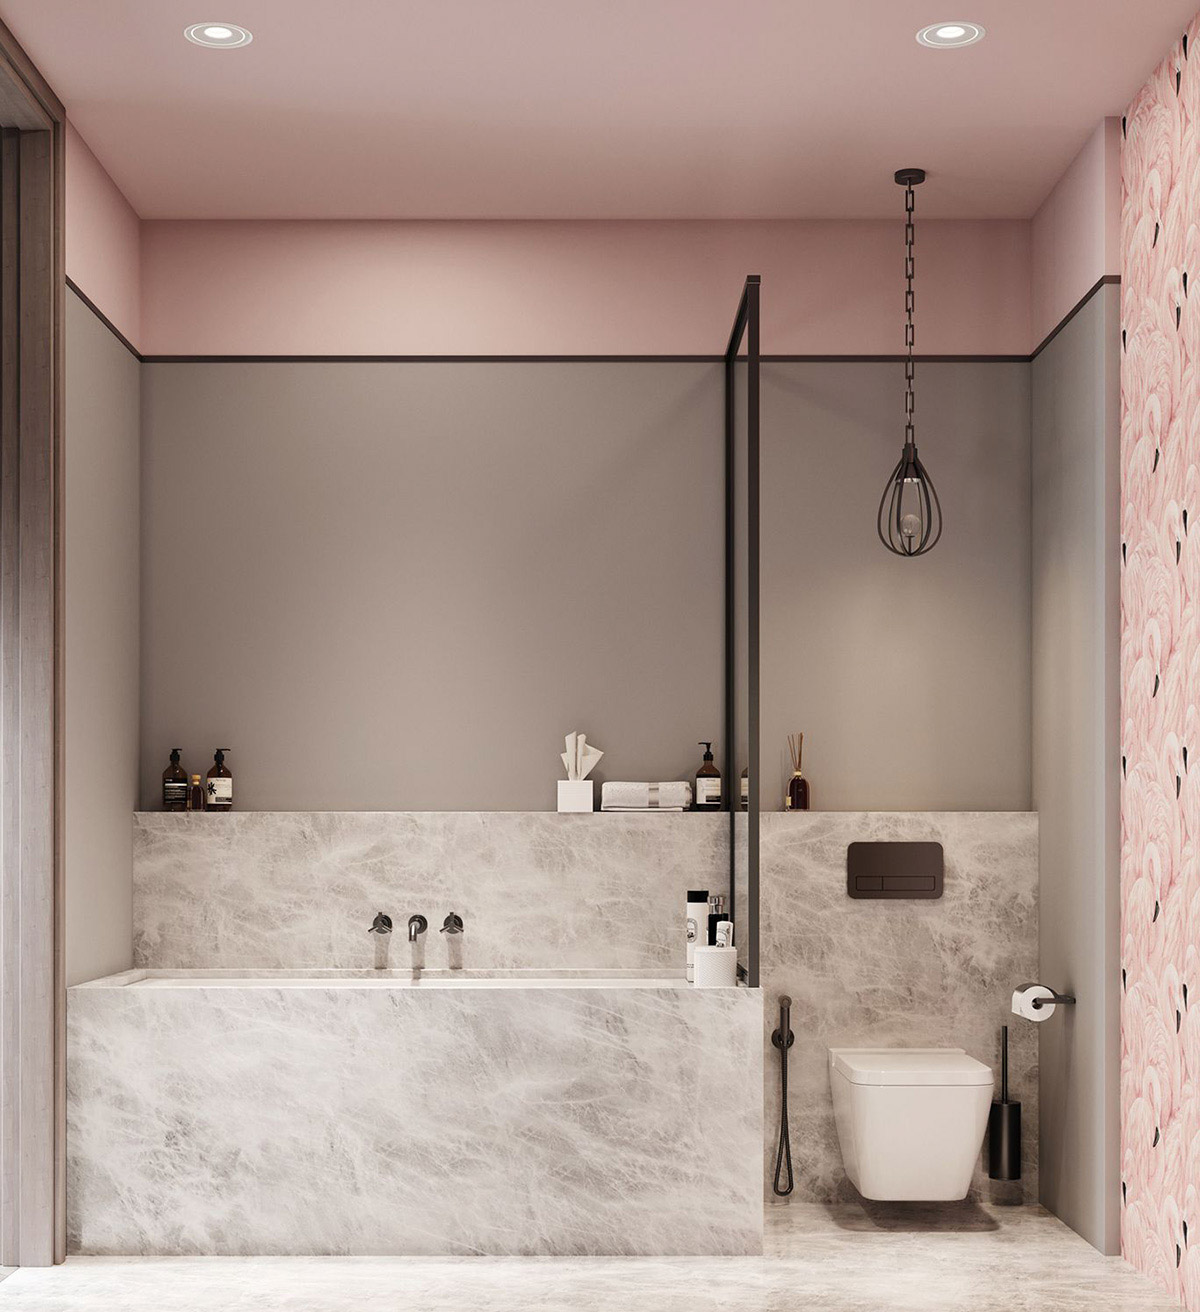 Phòng tắm màu hồng pastel